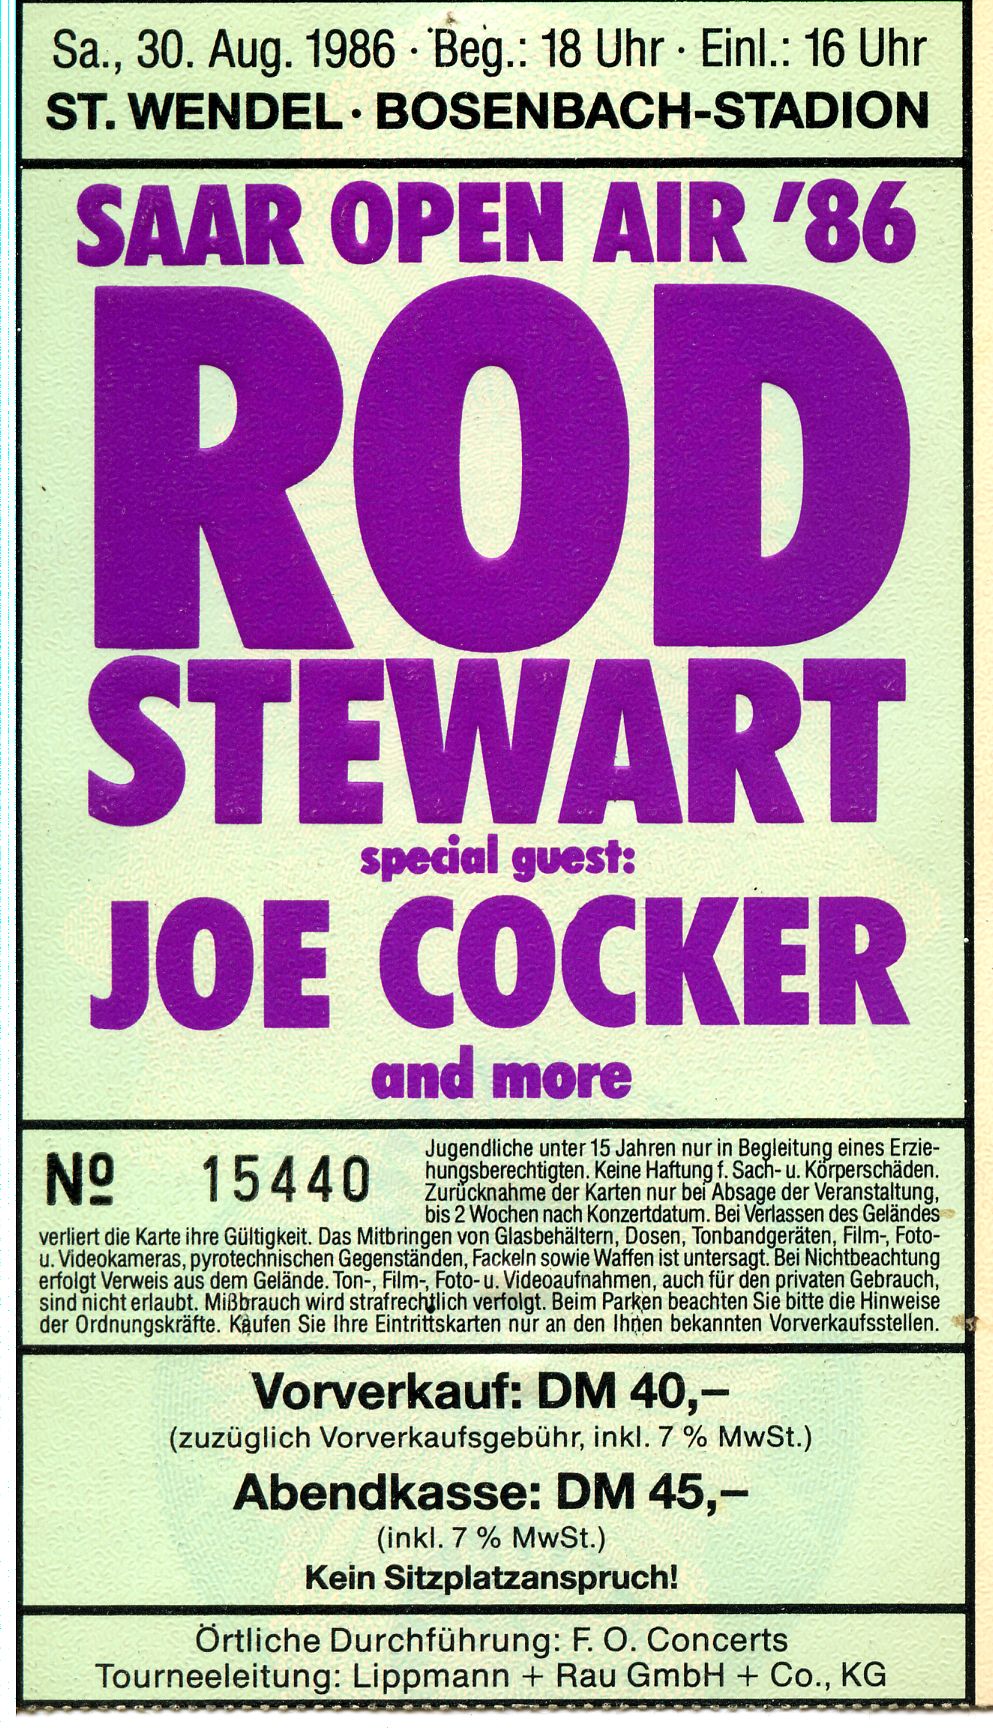 St Wendel 1986 Rod Stewart Joe Cocker.jpg